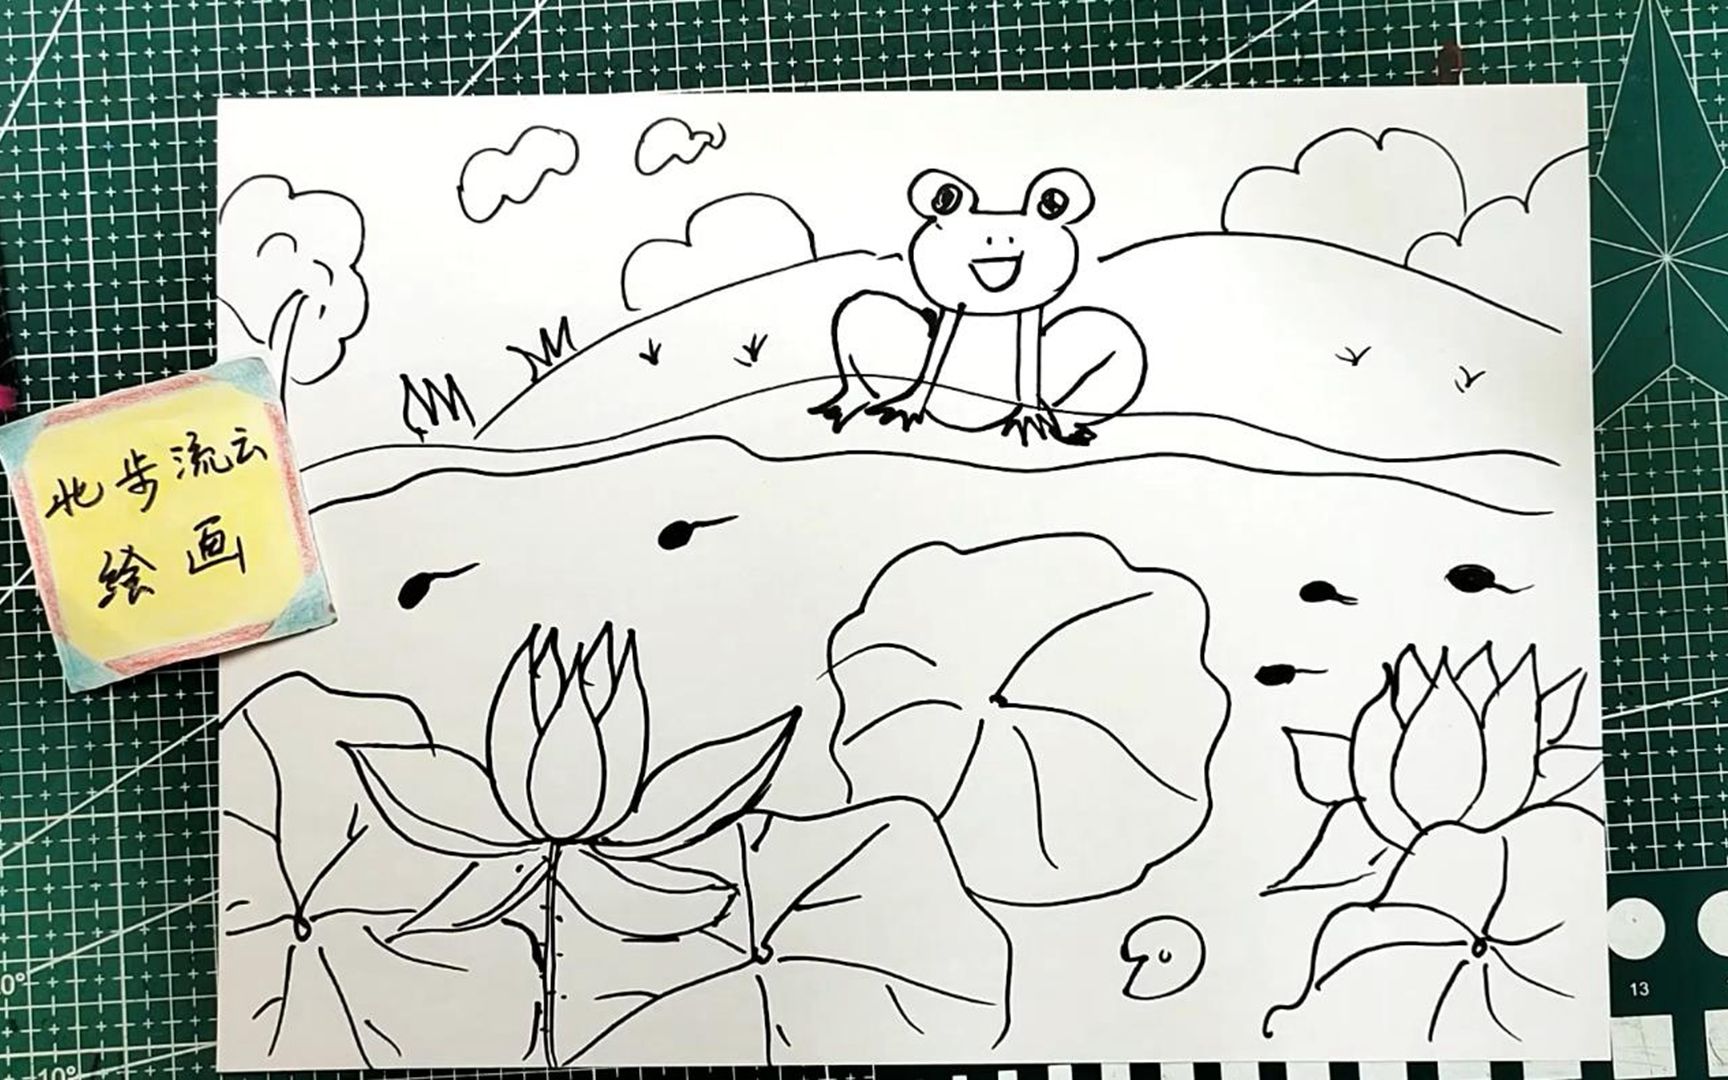 夏天荷塘,风景主题简笔画,简单易学的儿童画